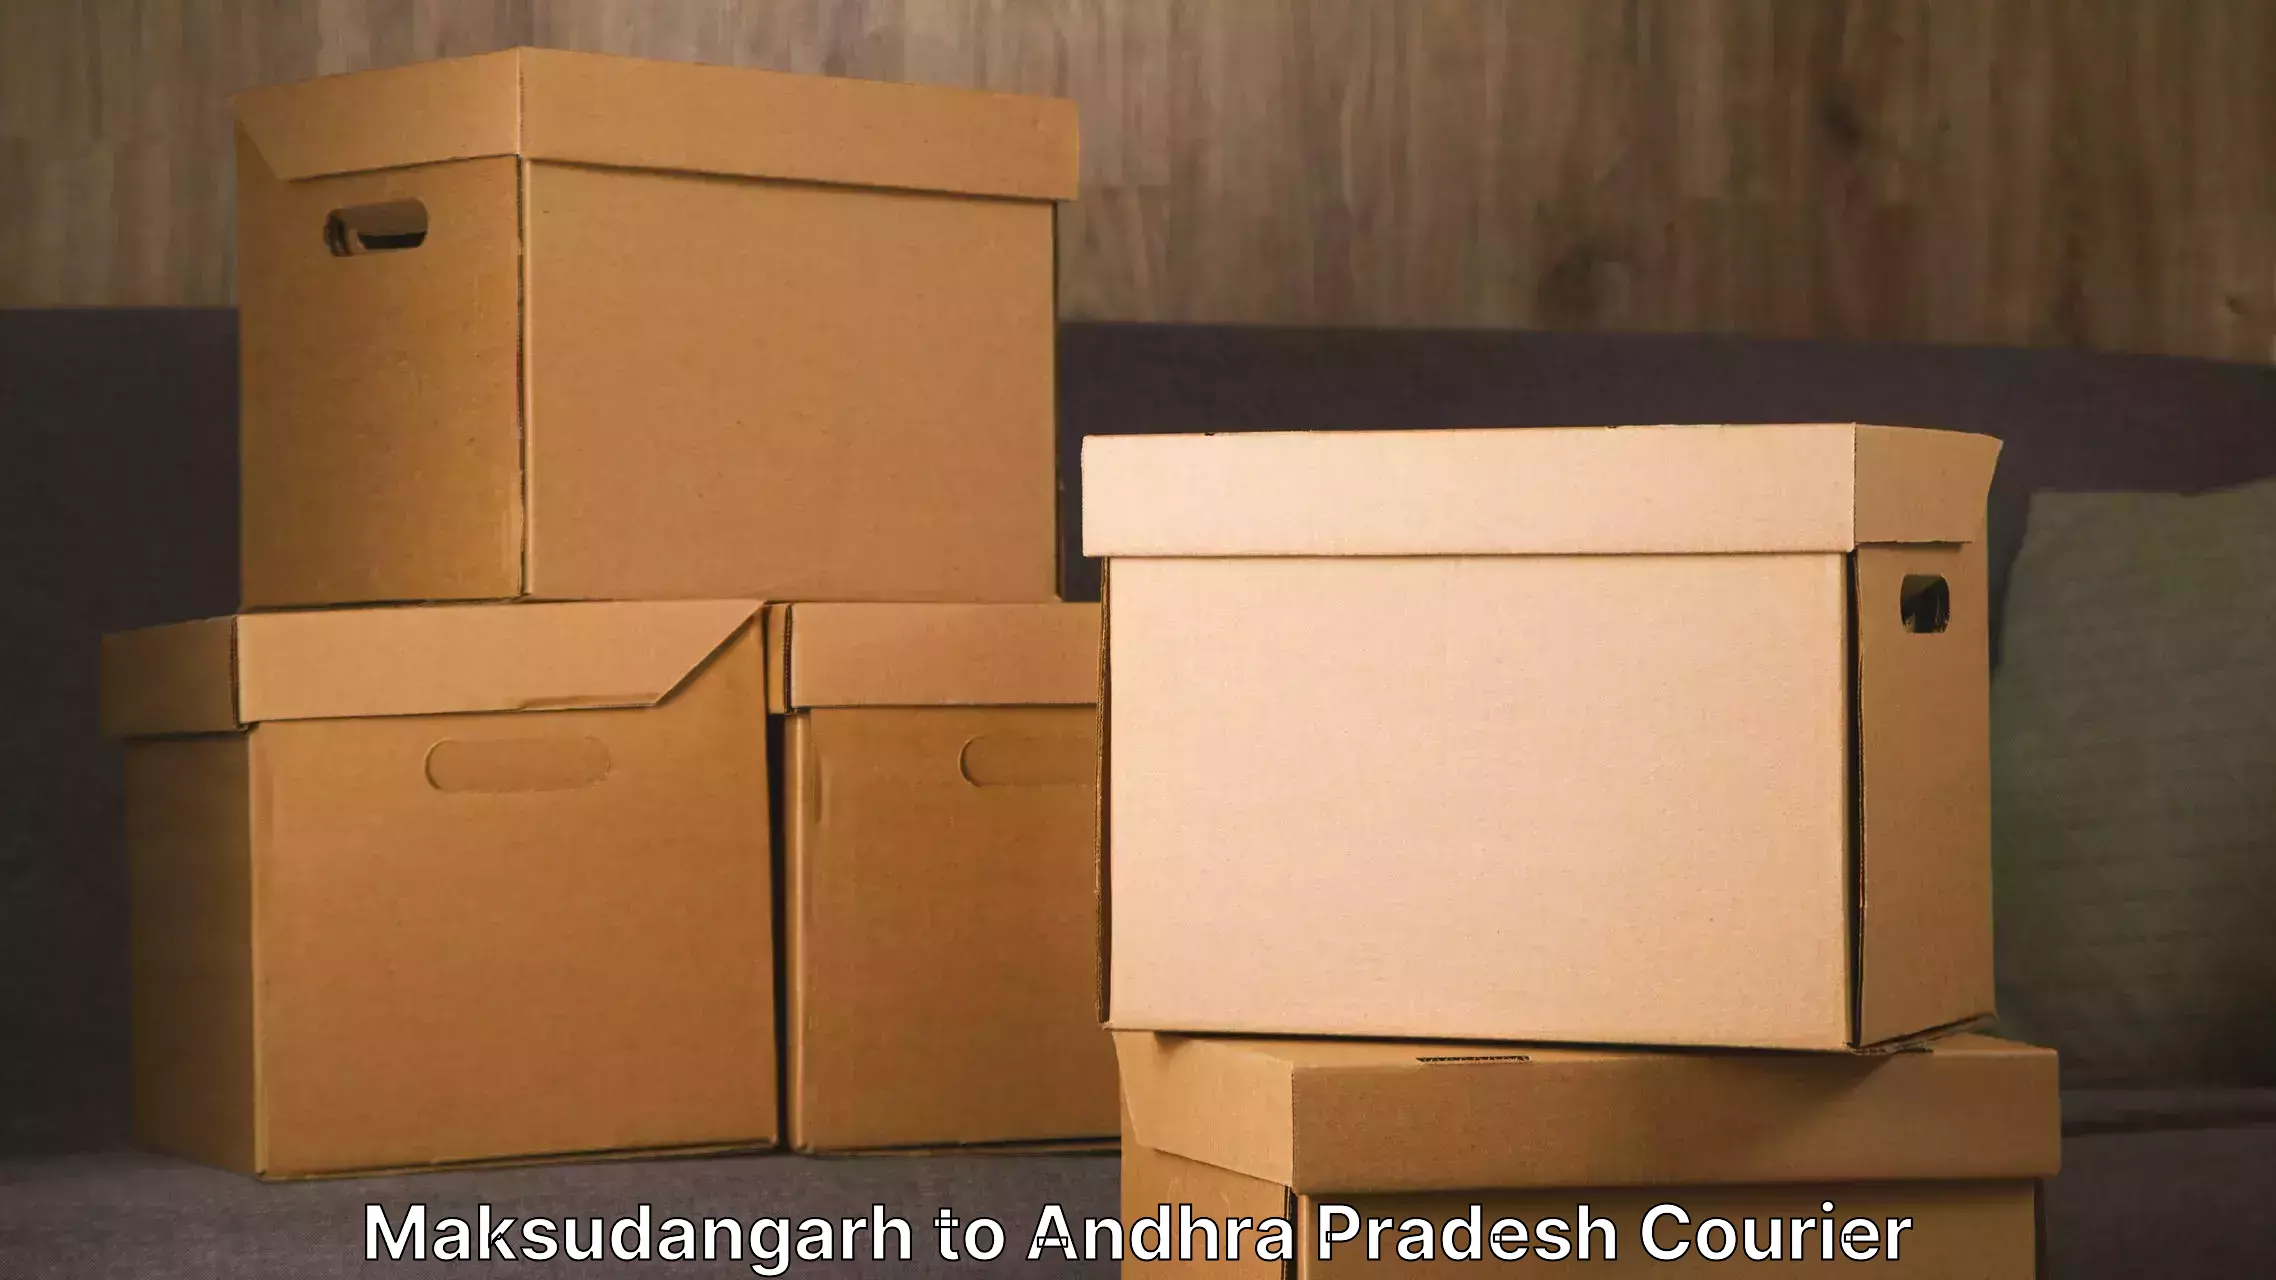 Furniture moving experts Maksudangarh to Kakinada